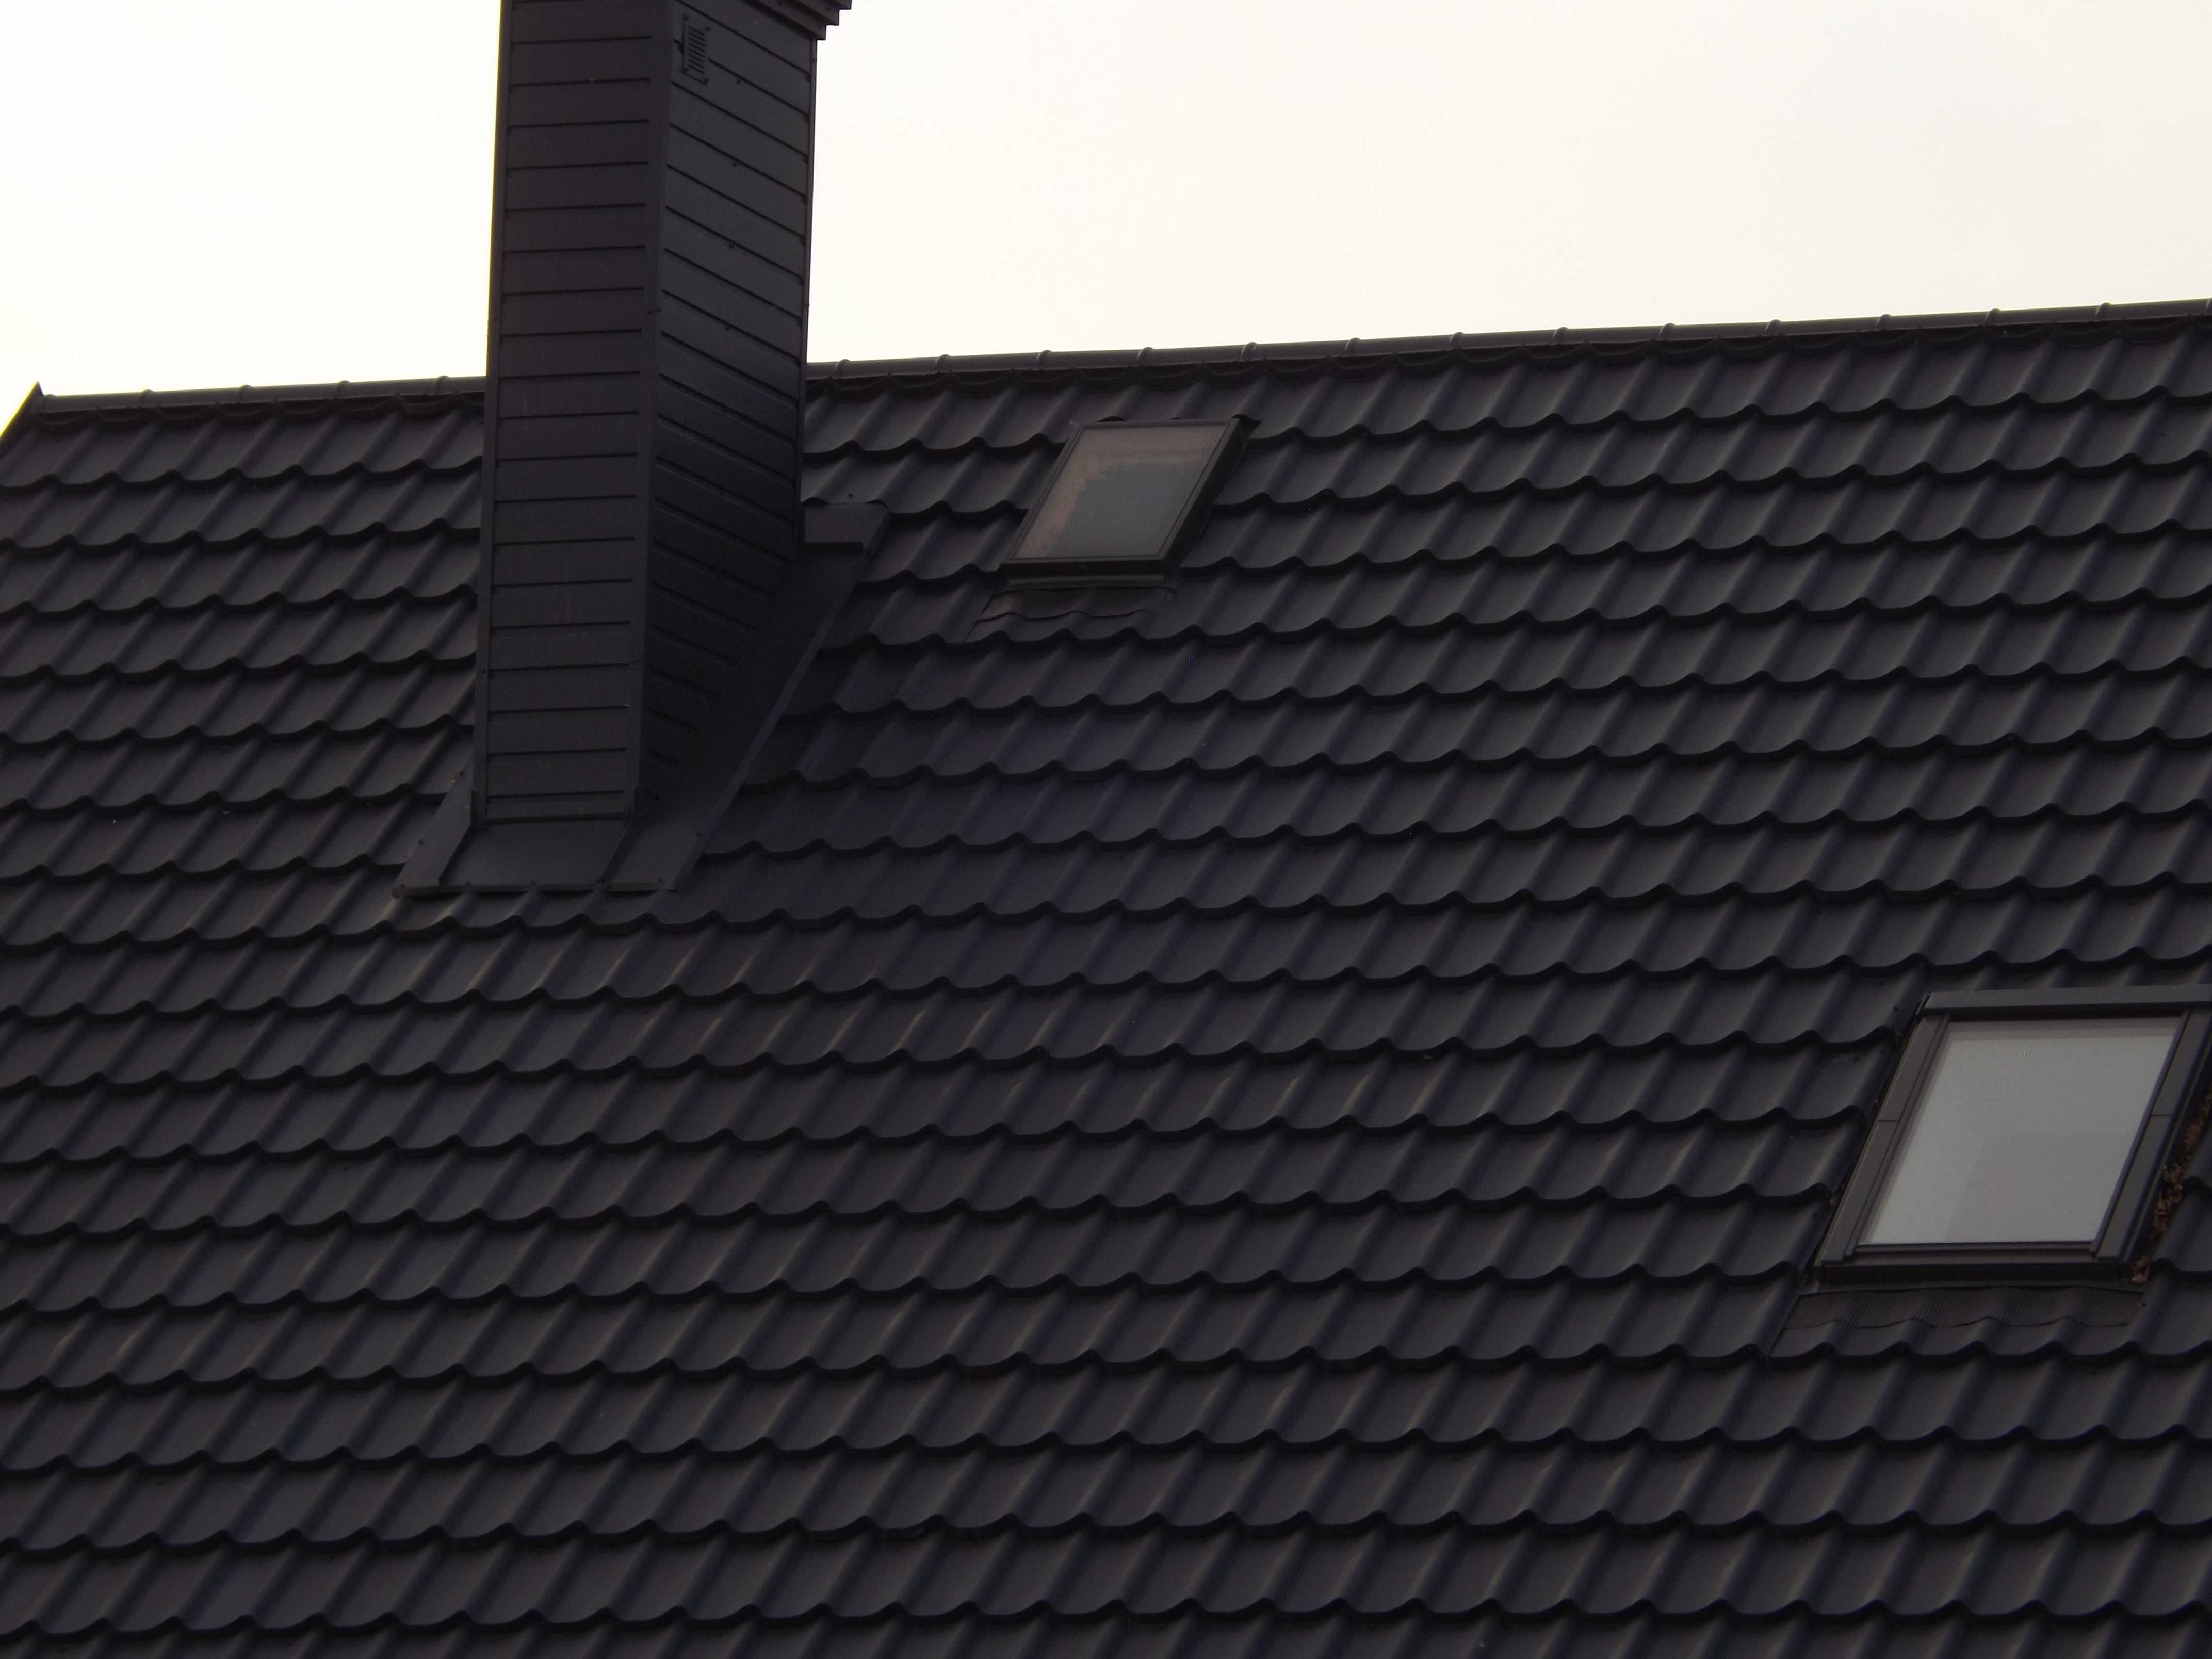 Dachy krycie więźby dachowe pod przybitki